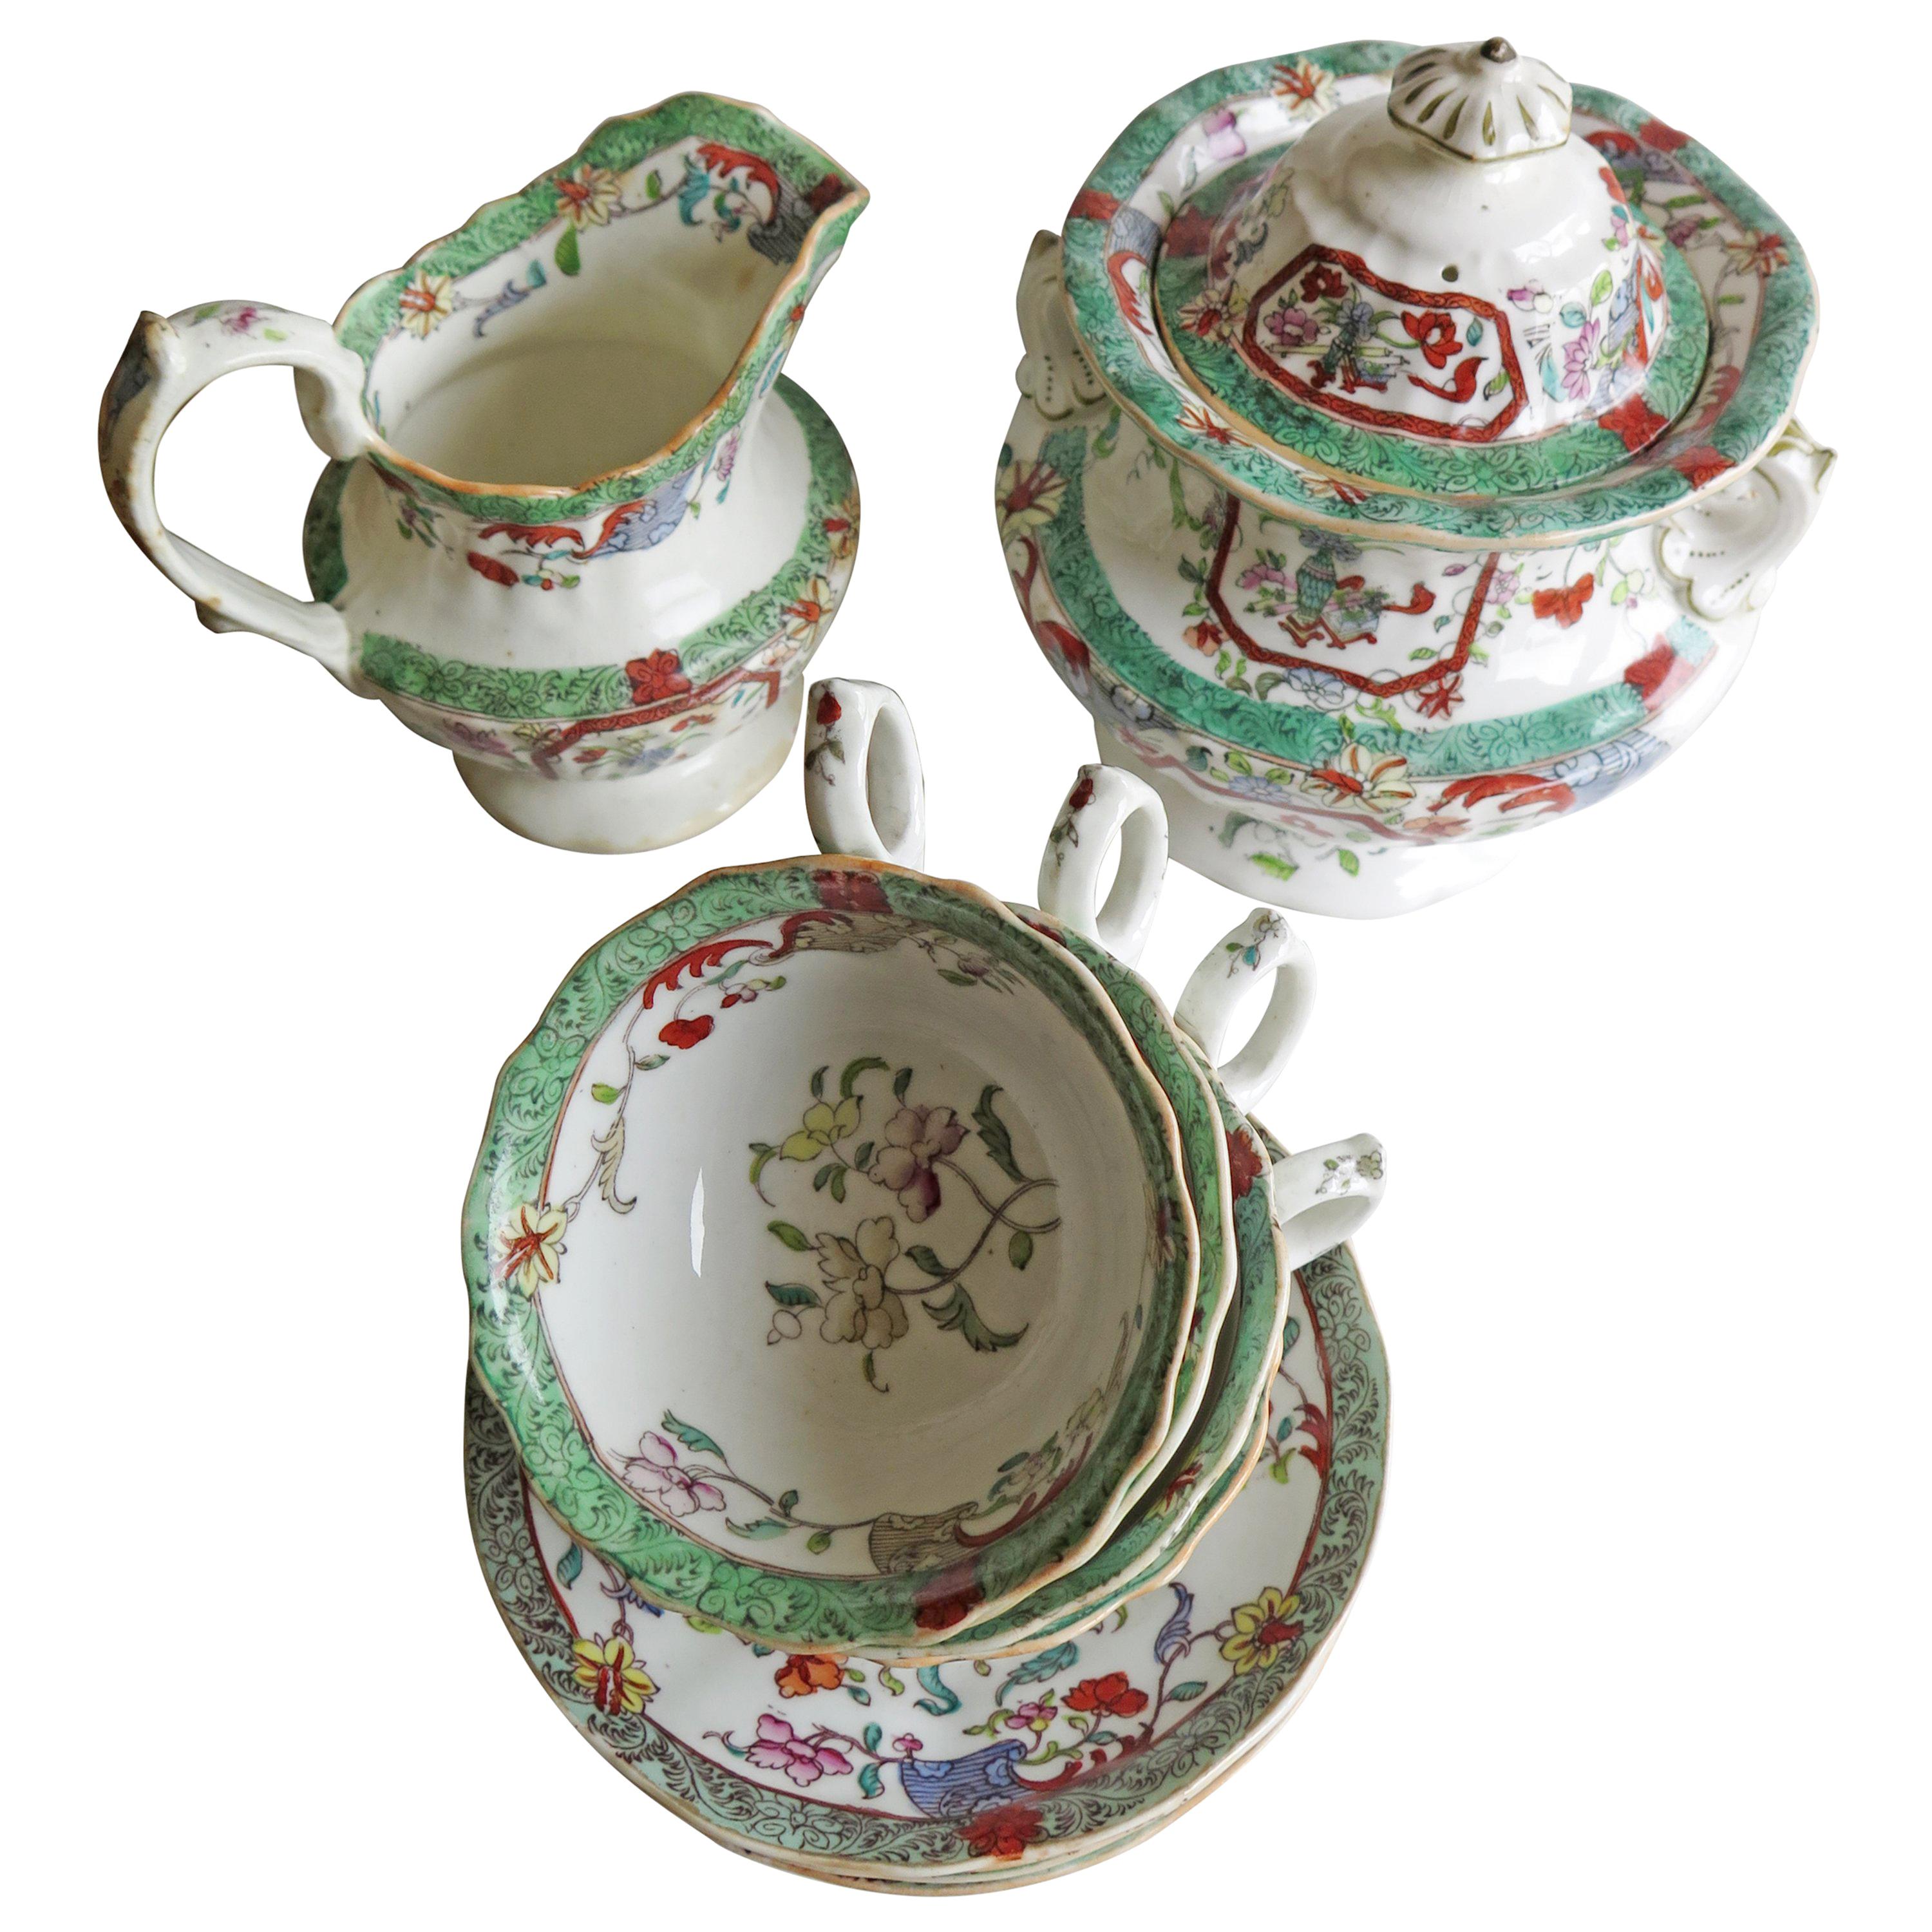 Se trata de un juego de té temprano de porcelana inglesa, fabricado por C. J. Mason (la misma fábrica que produjo Mason's Ironstone) durante el periodo de Guillermo IV, hacia 1830-1835.

El juego de té consta de diez piezas;
un sucrificador o